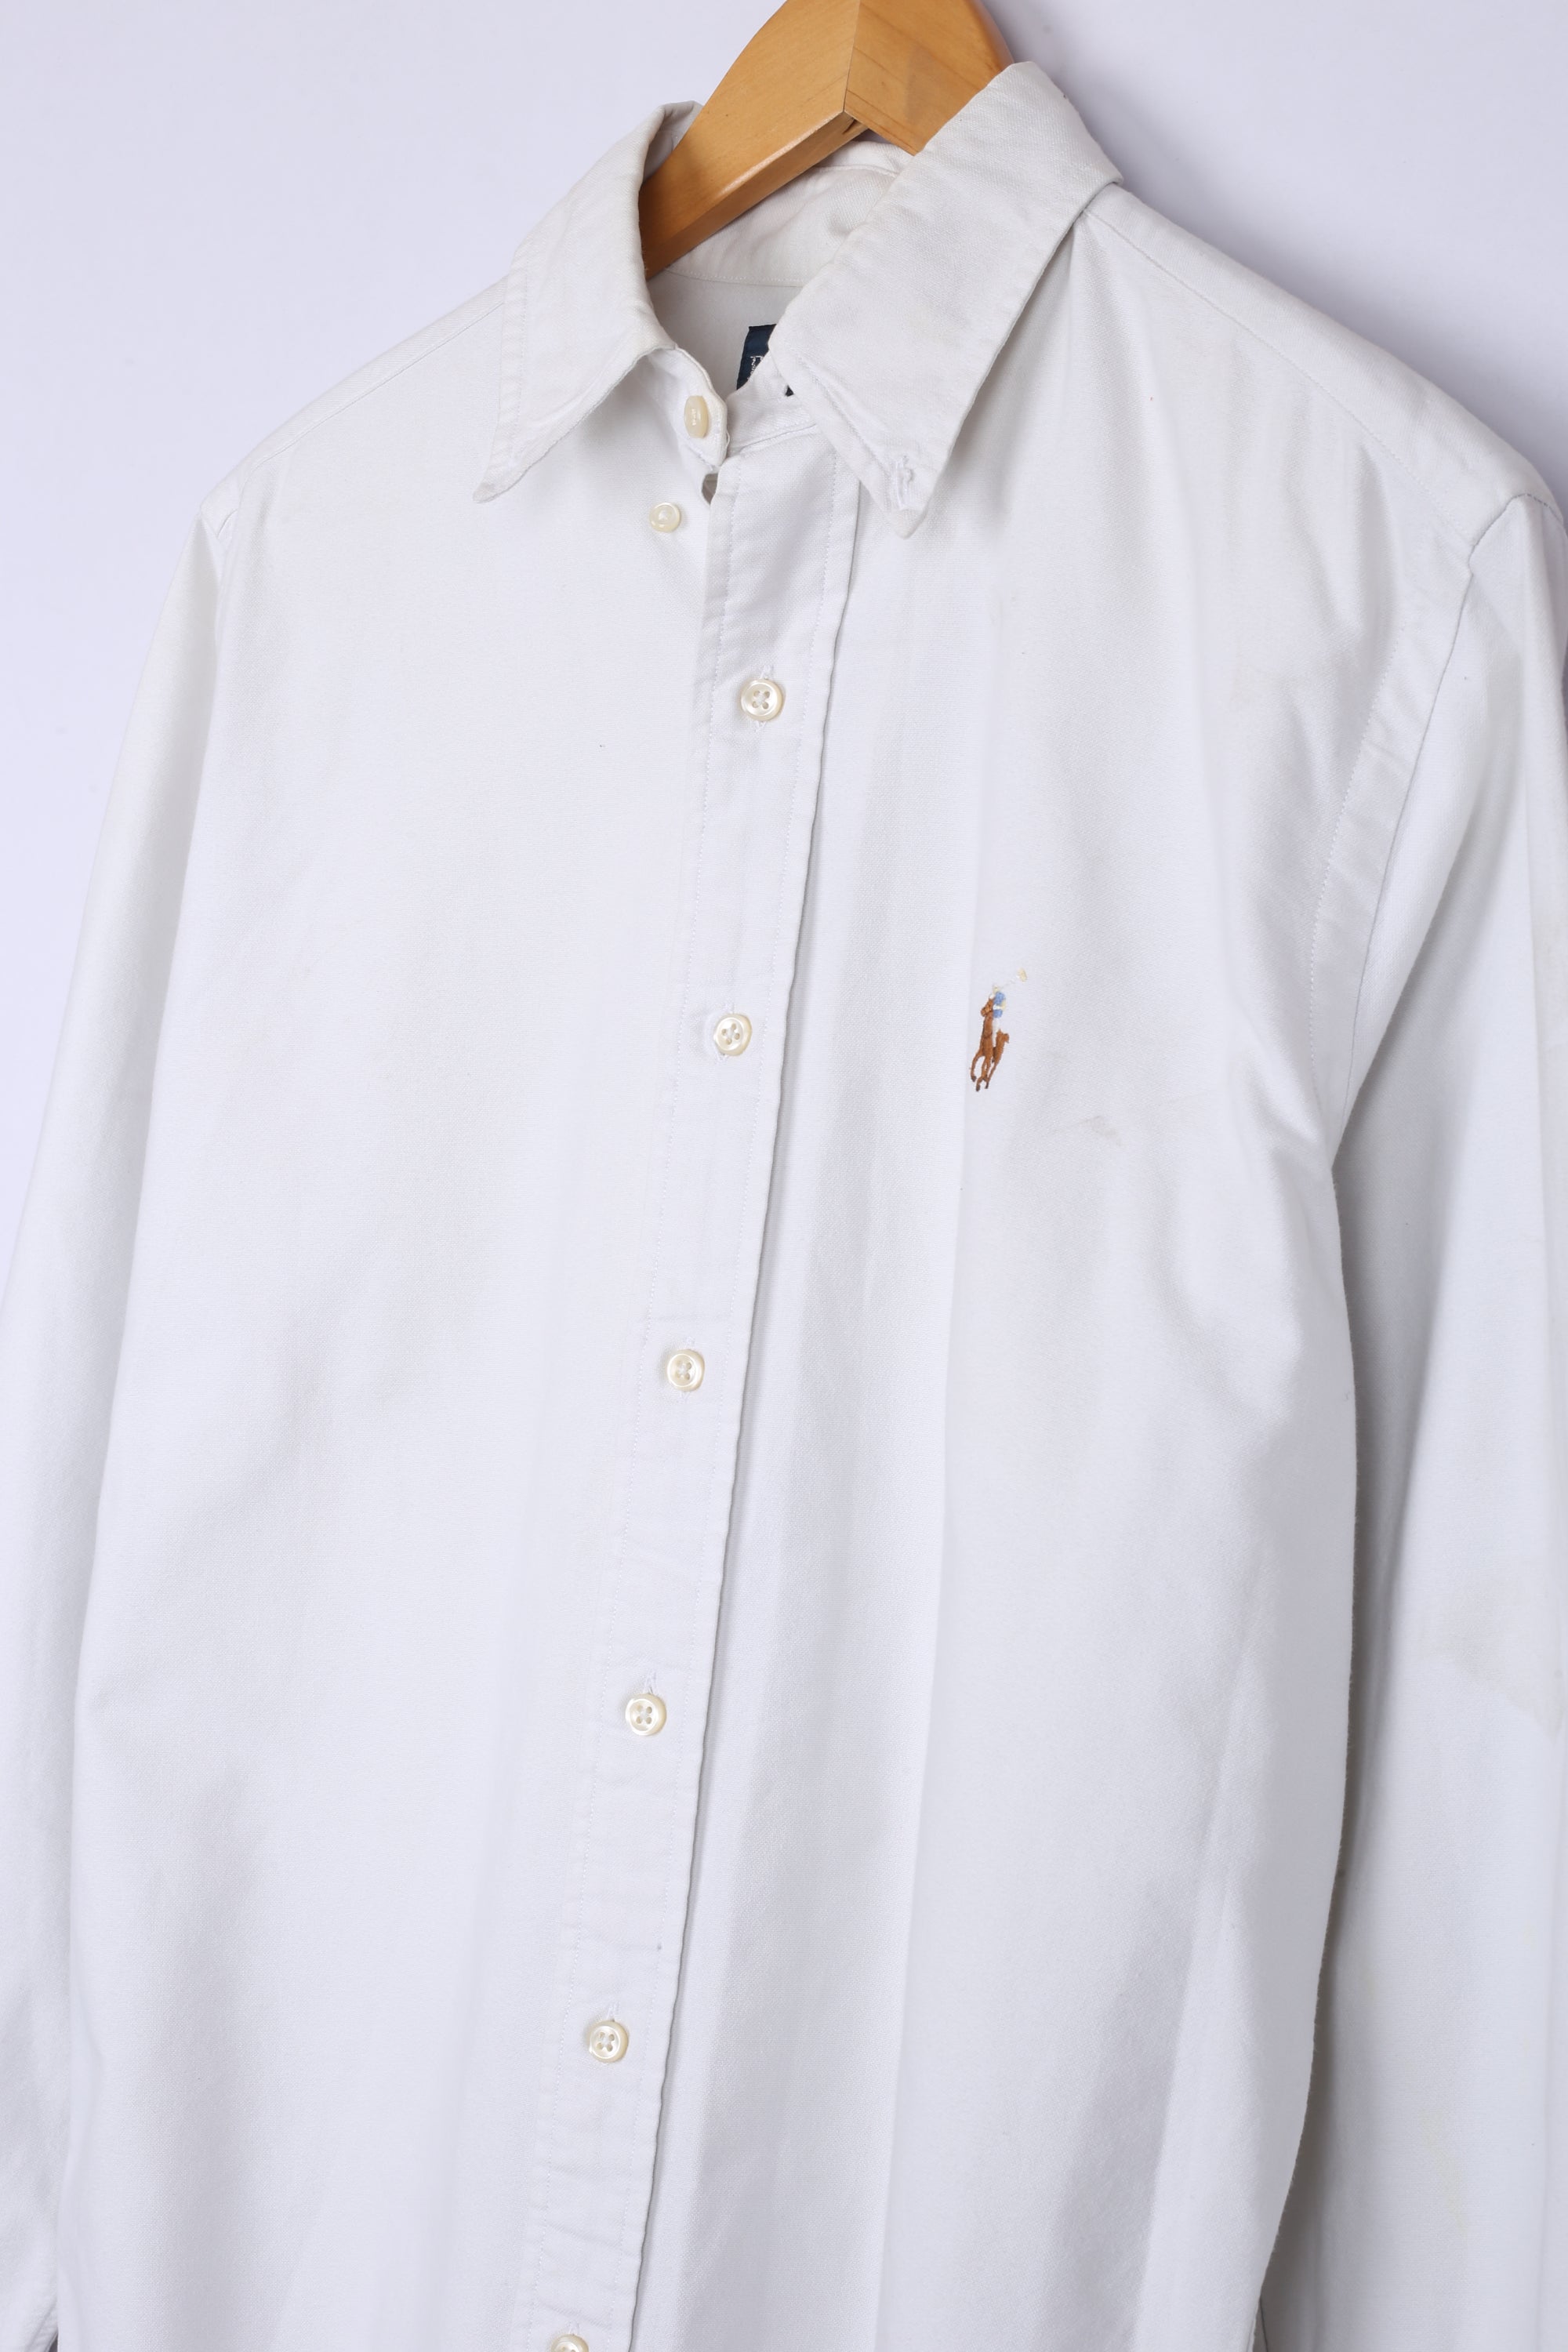 Vintage Ralph Lauren Shirt White